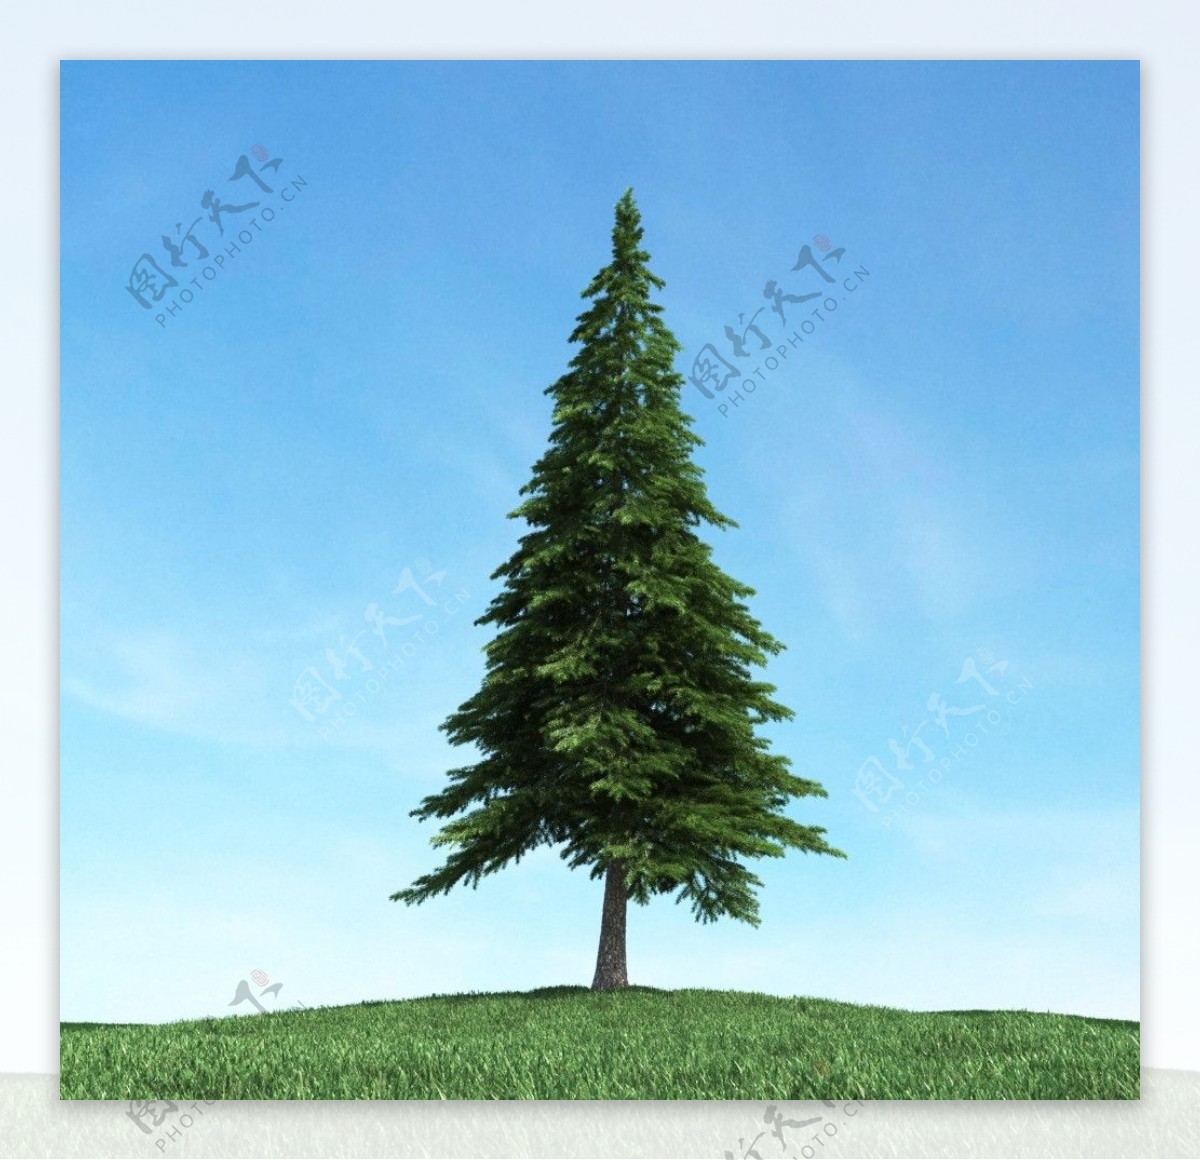 树木高大植物模型图片